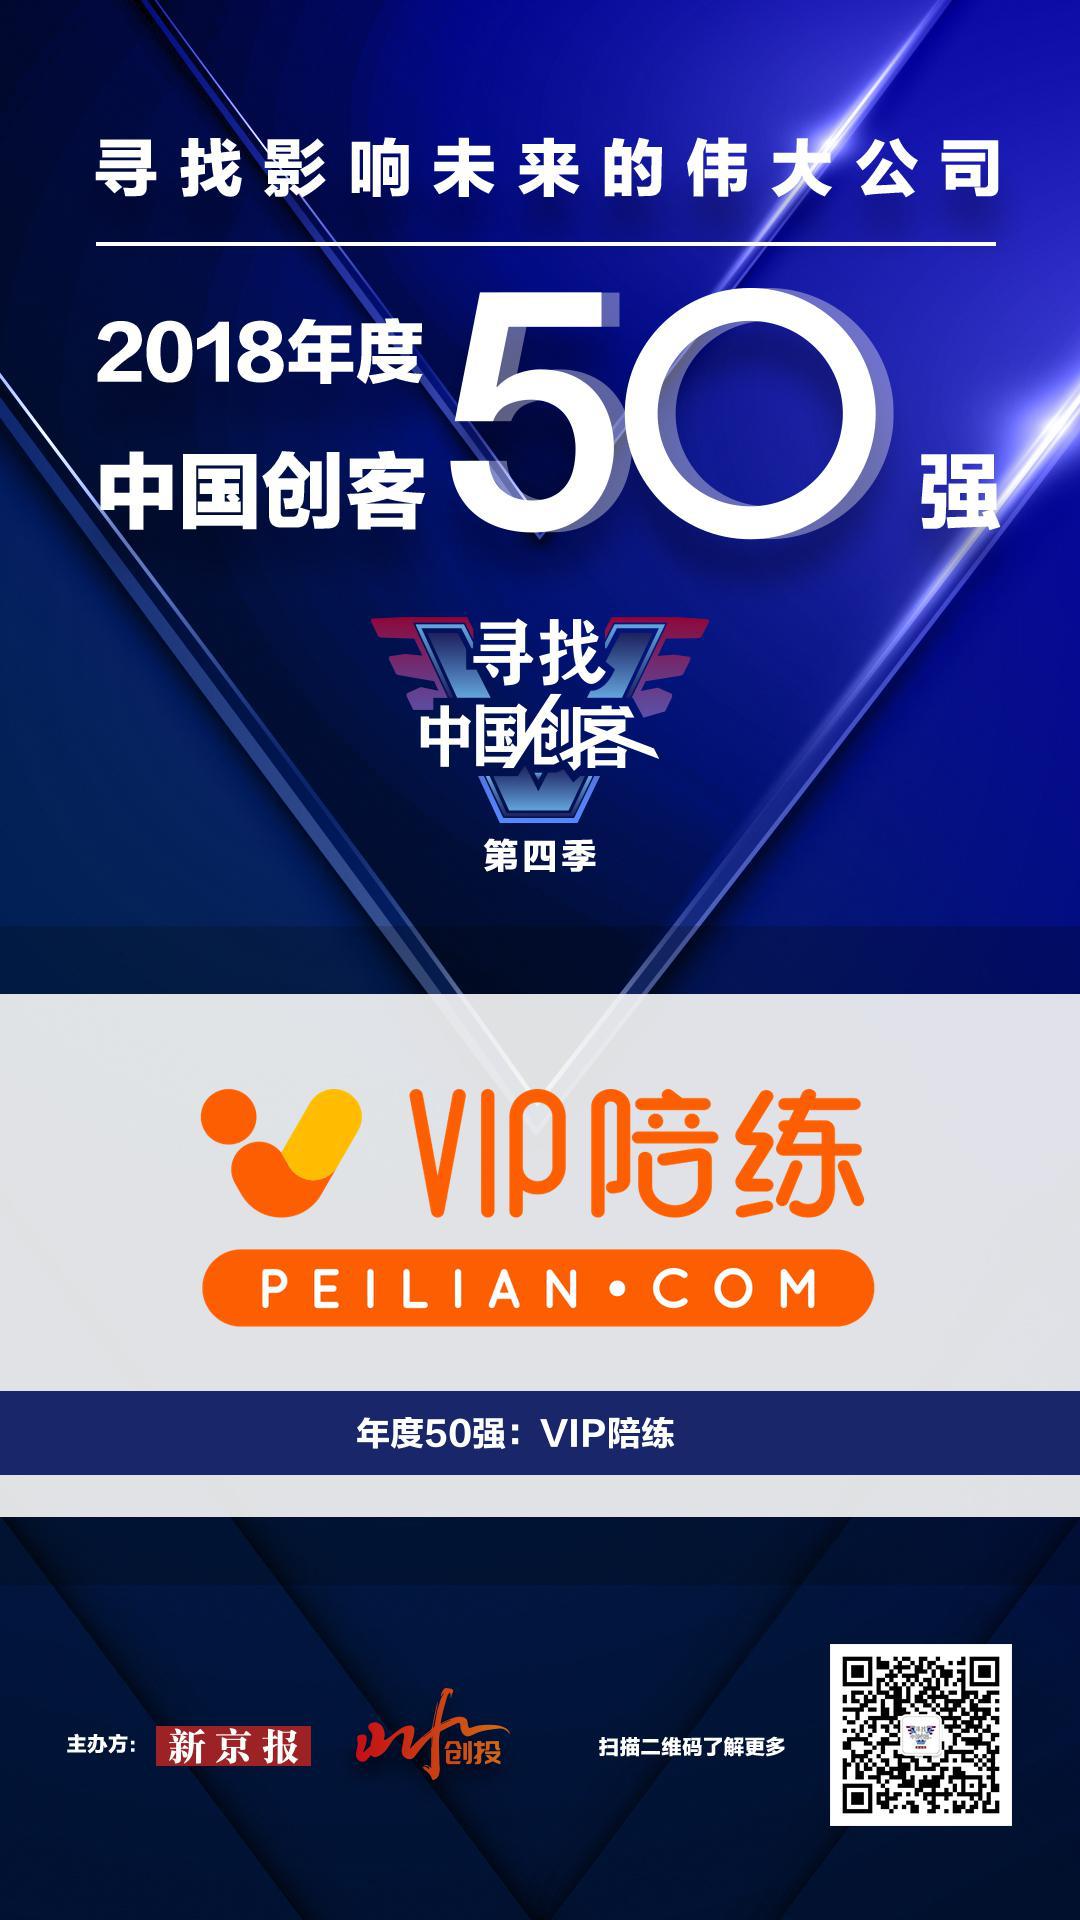 中国创客50强之一“VIP陪练” 将亮相乌镇世界互联网大会